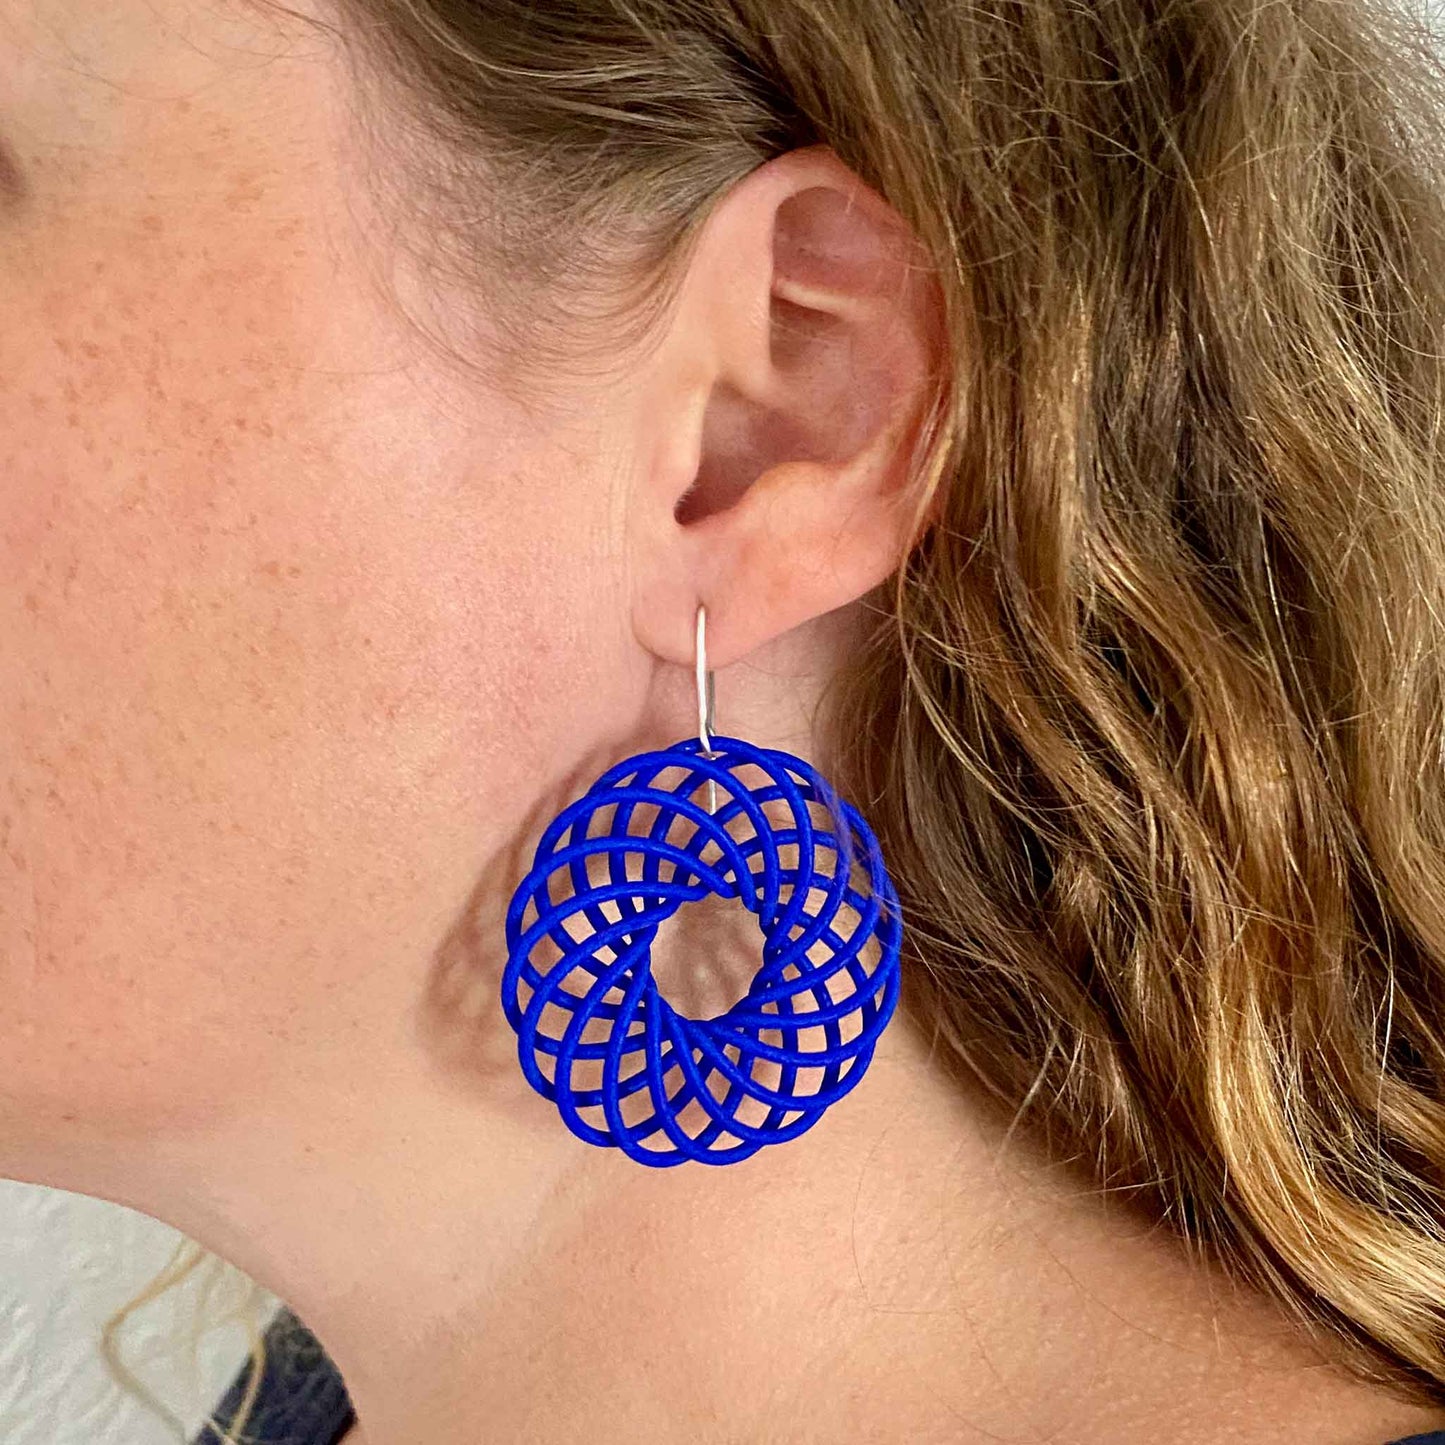 5cm vortex earring size when worn 